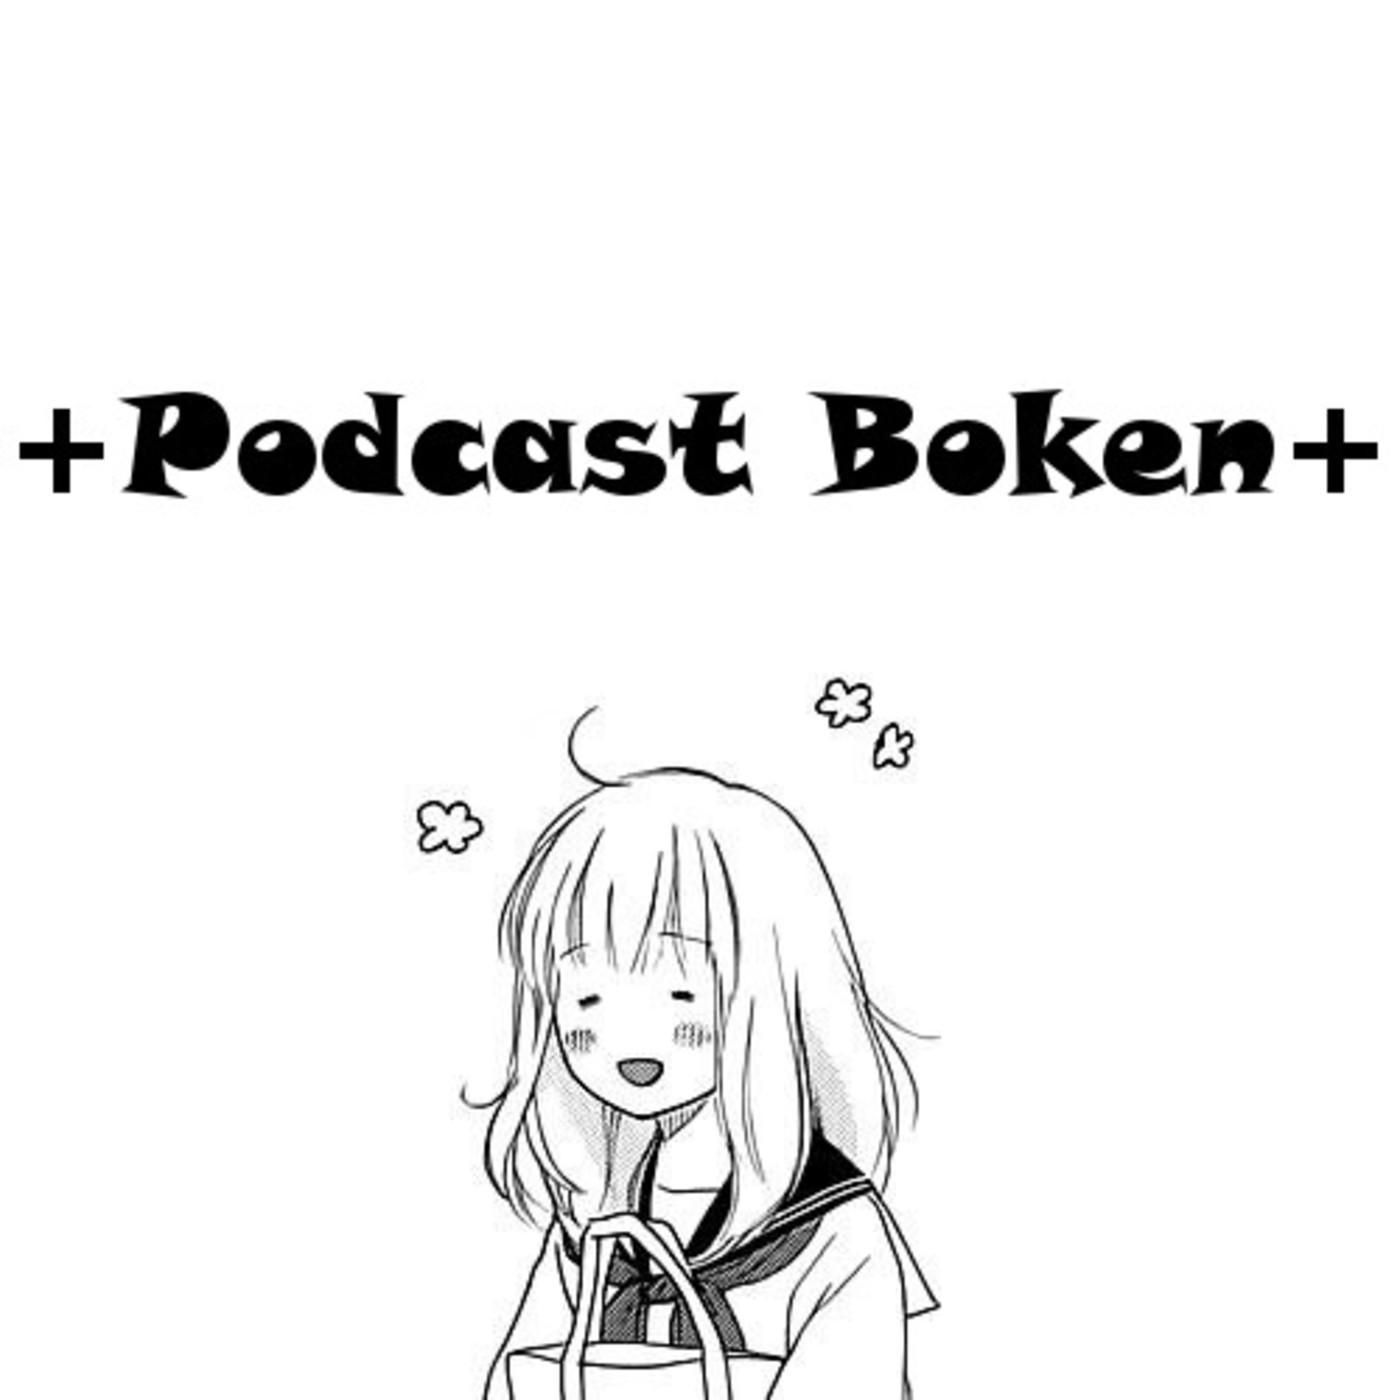 +Podcast Boken+